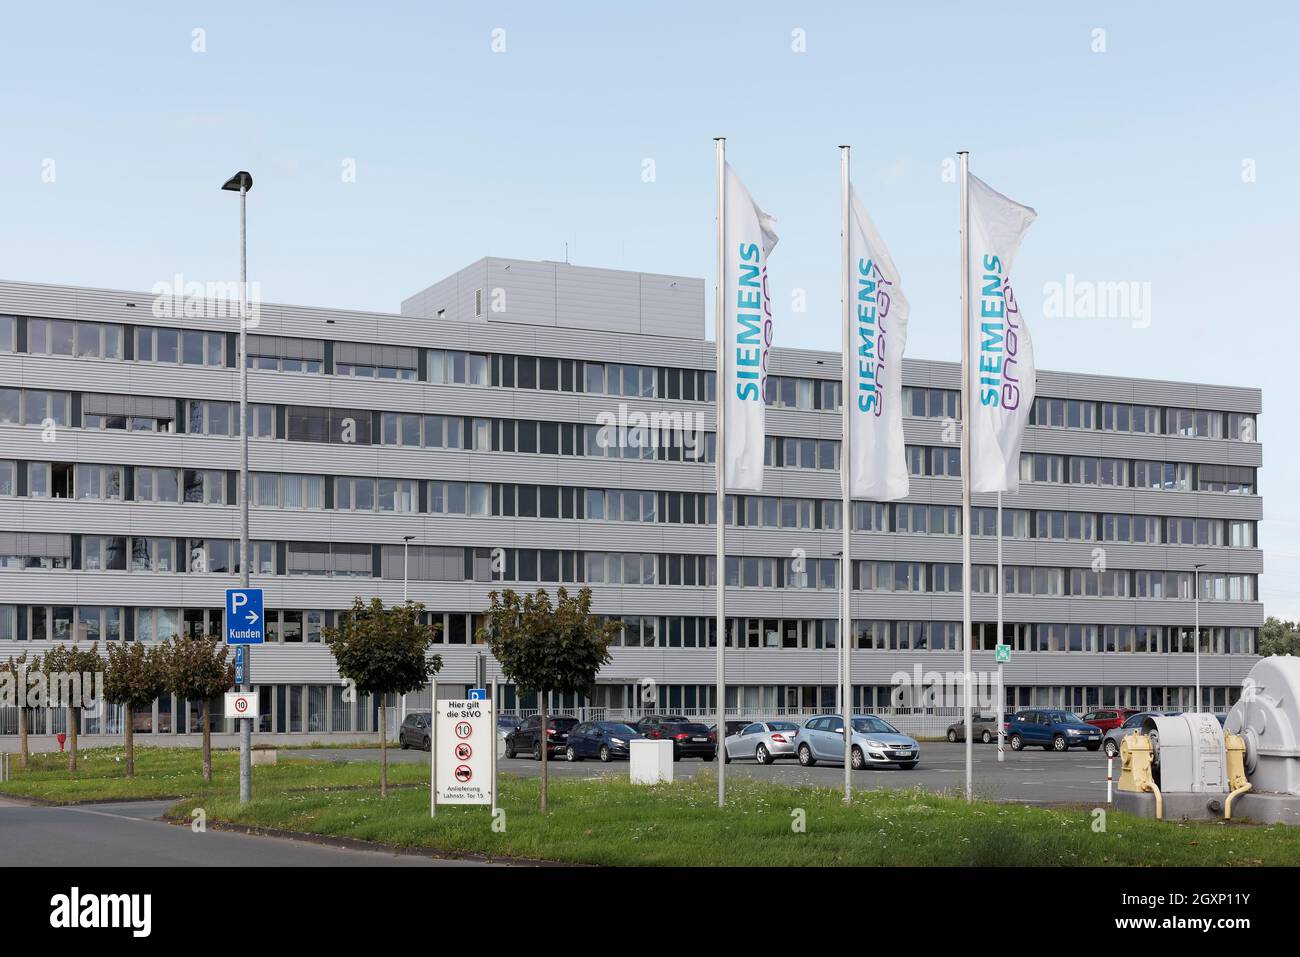 Siemens Energy, empresa de tecnología energética, sede de Muelheim an der Ruhr, región de Ruhr, Renania del Norte-Westfalia, Alemania Foto de stock